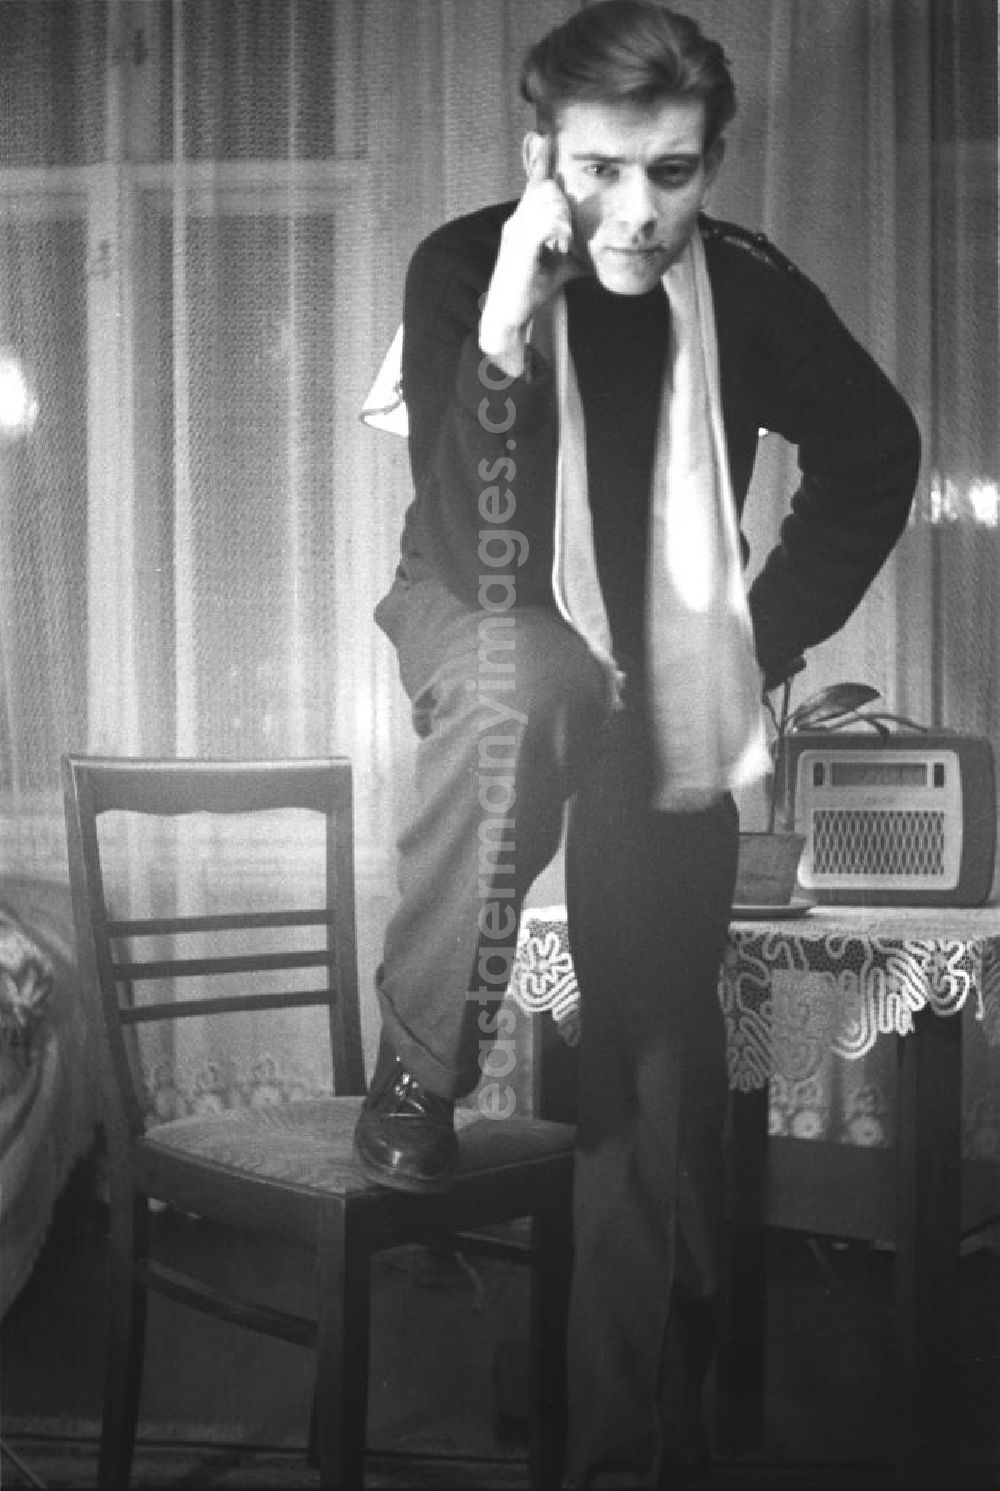 GDR image archive: Leipzig - Frühes Selbstportrait des Fotografen Klaus Morgenstern. Morgenstern, lässig bis elegant gekleidet, posiert mit einem Stuhl. Auf einem beistehenden Tisch ein Radiogerät der 5